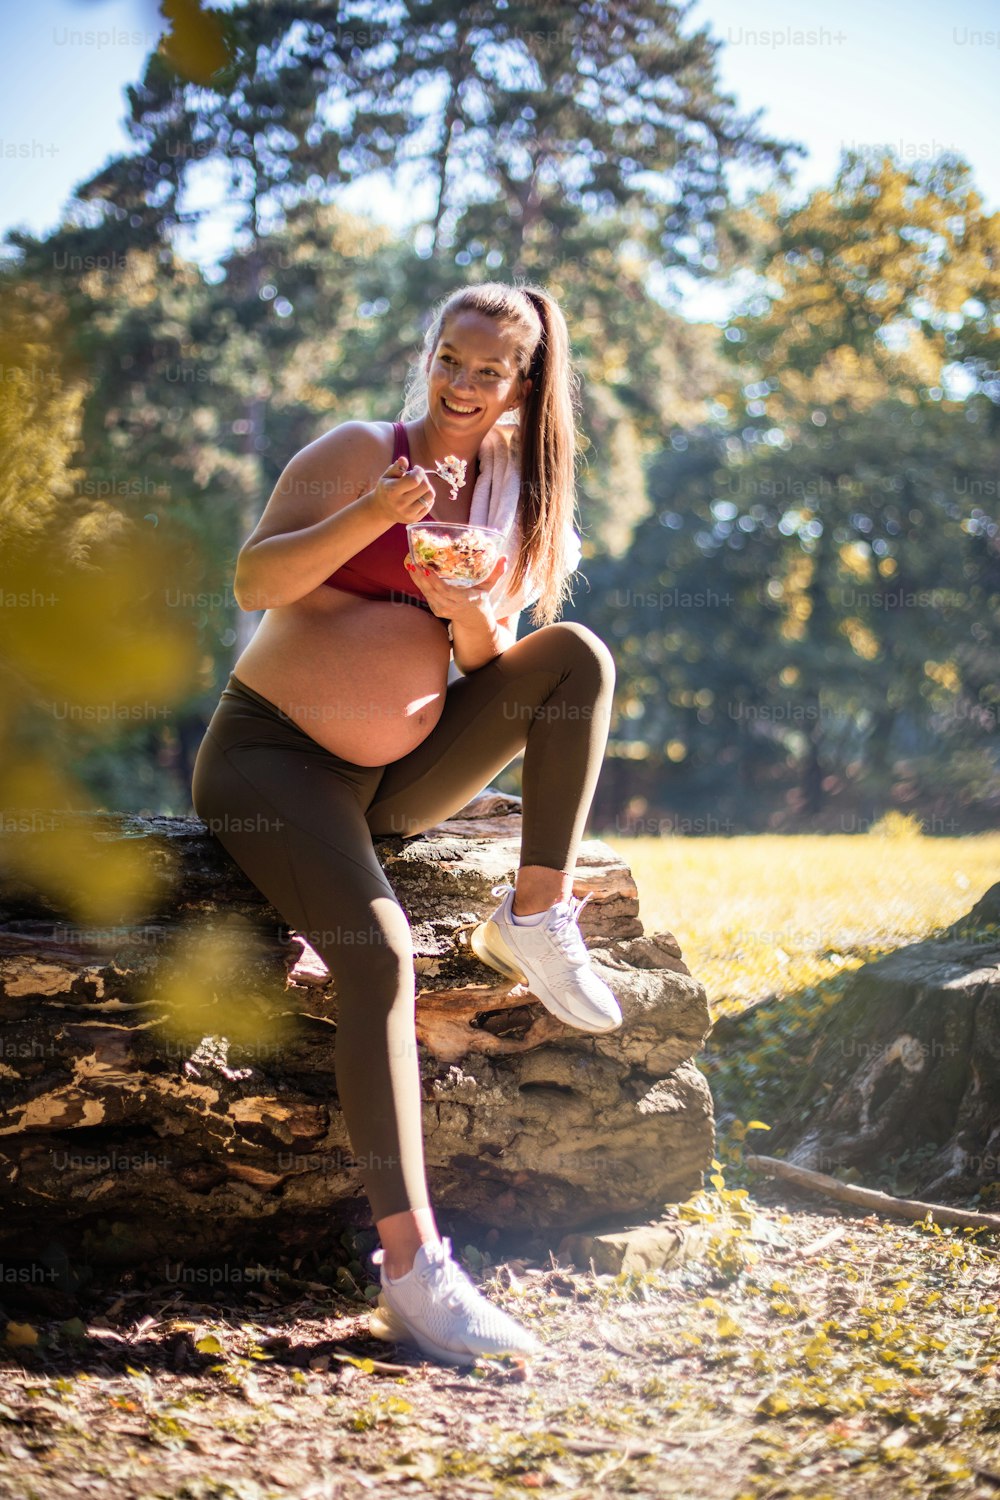 Mulher grávida comendo salada após o exercício no parque.